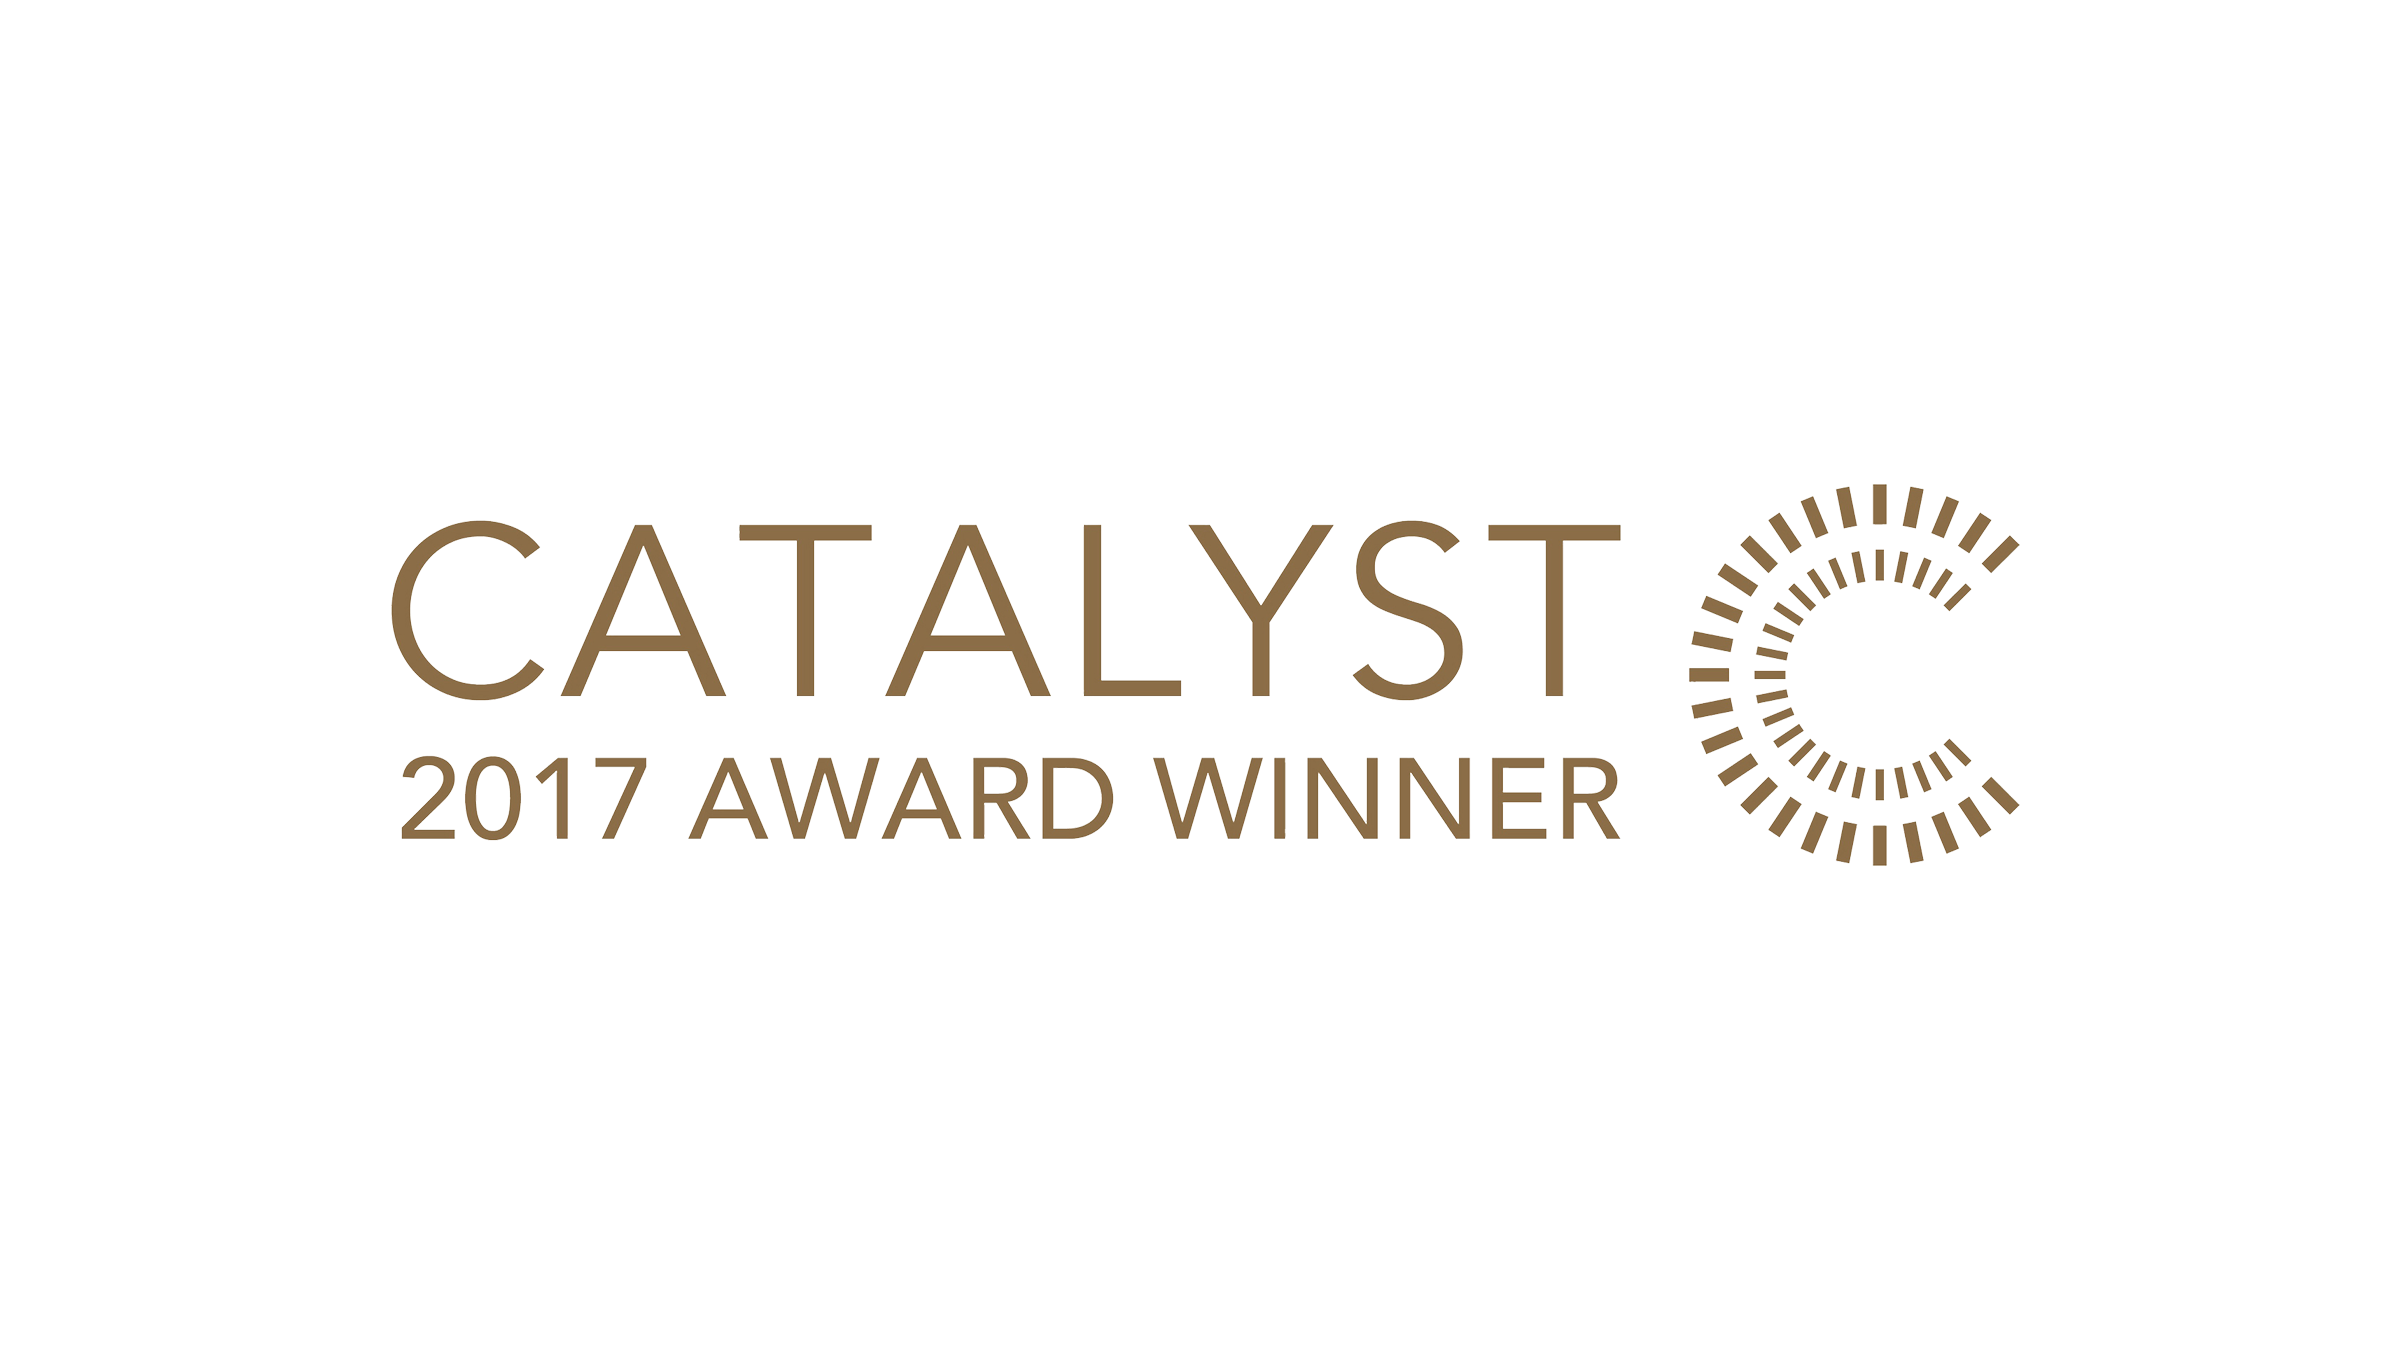 Catalyst Award Winner 2017 logo